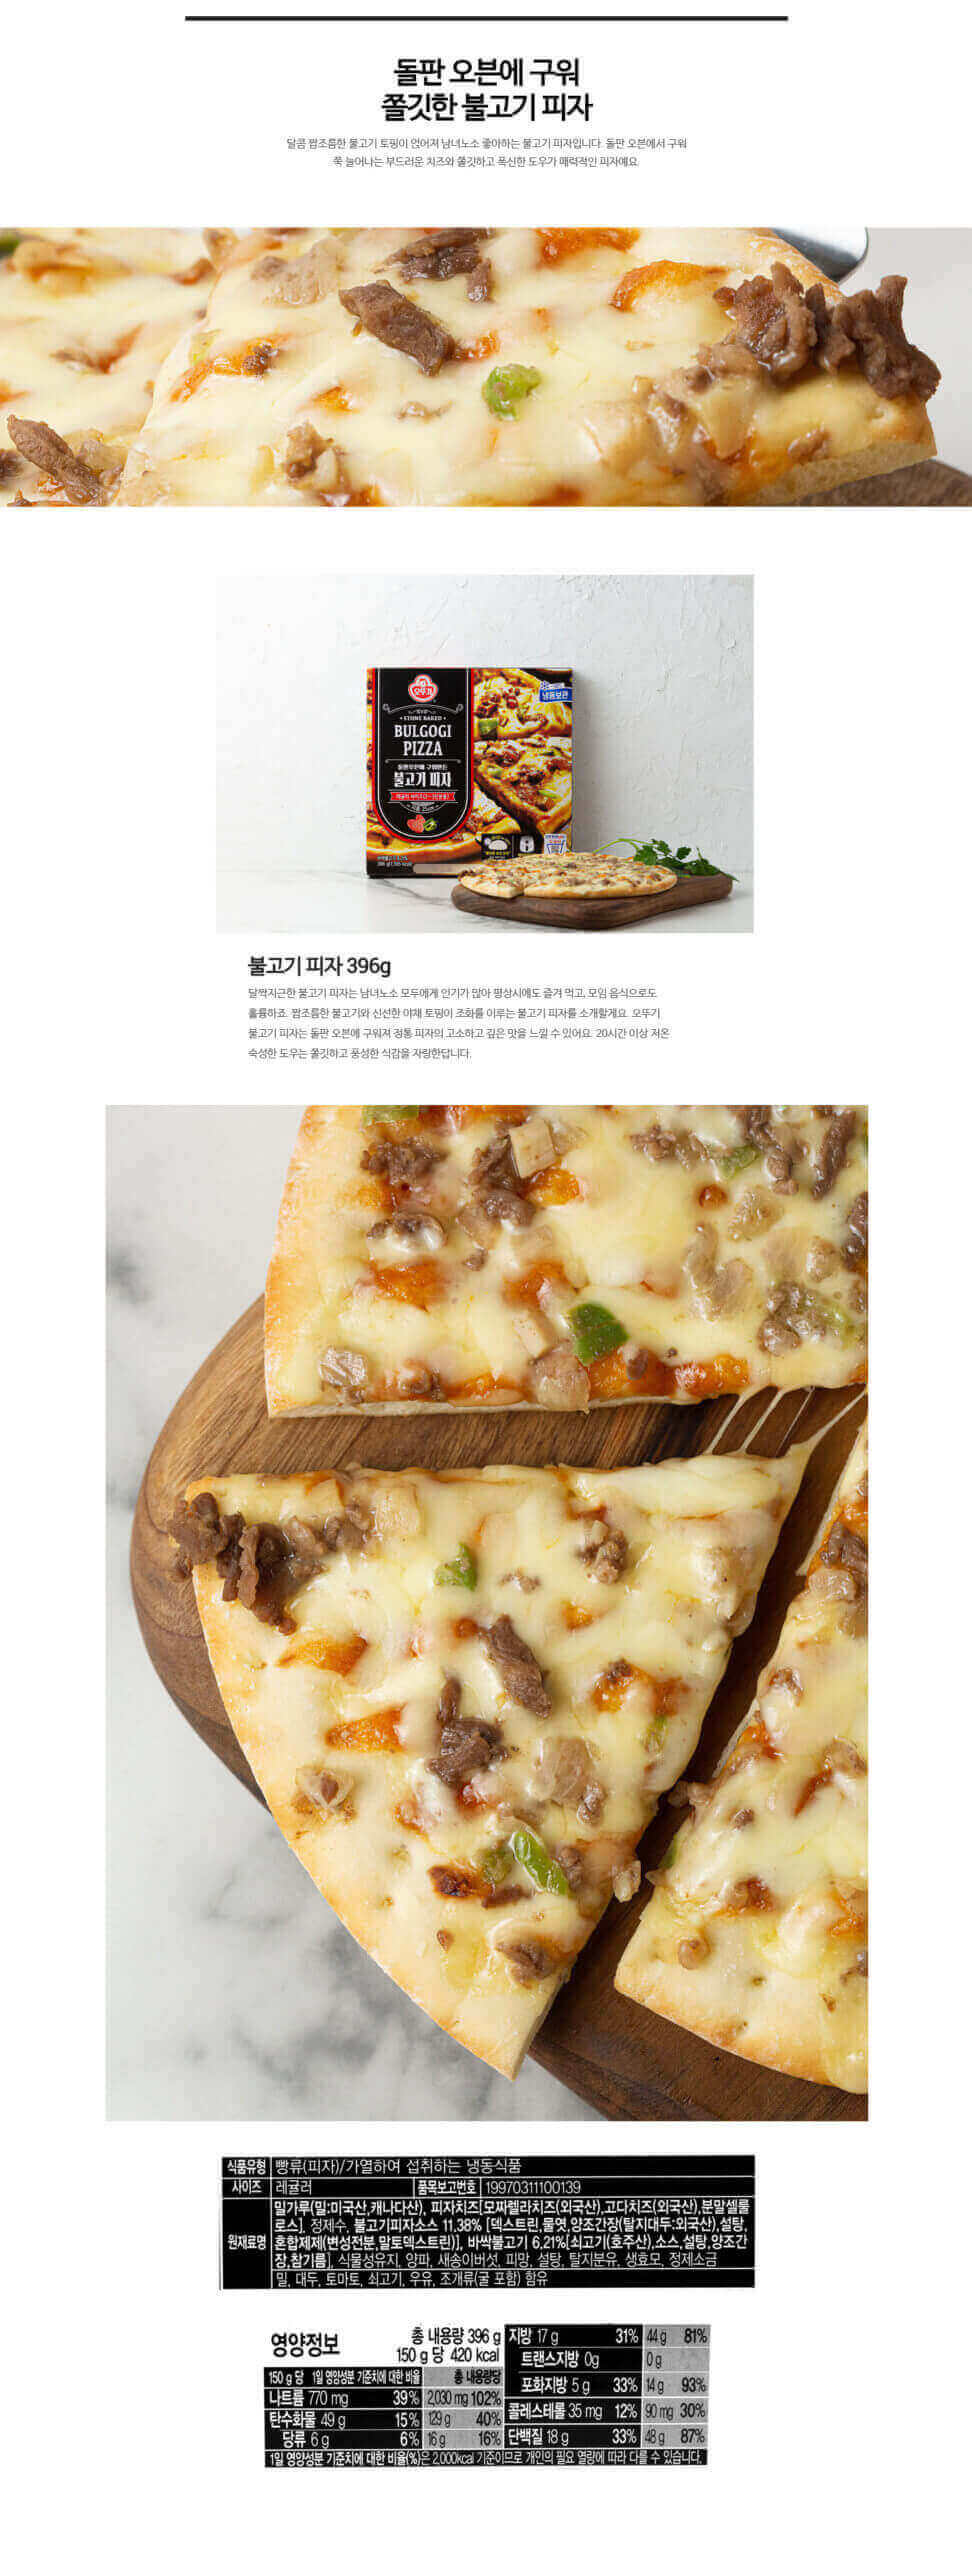 韓國食品-[Ottogi] Pizza[Bulgogi] 396g